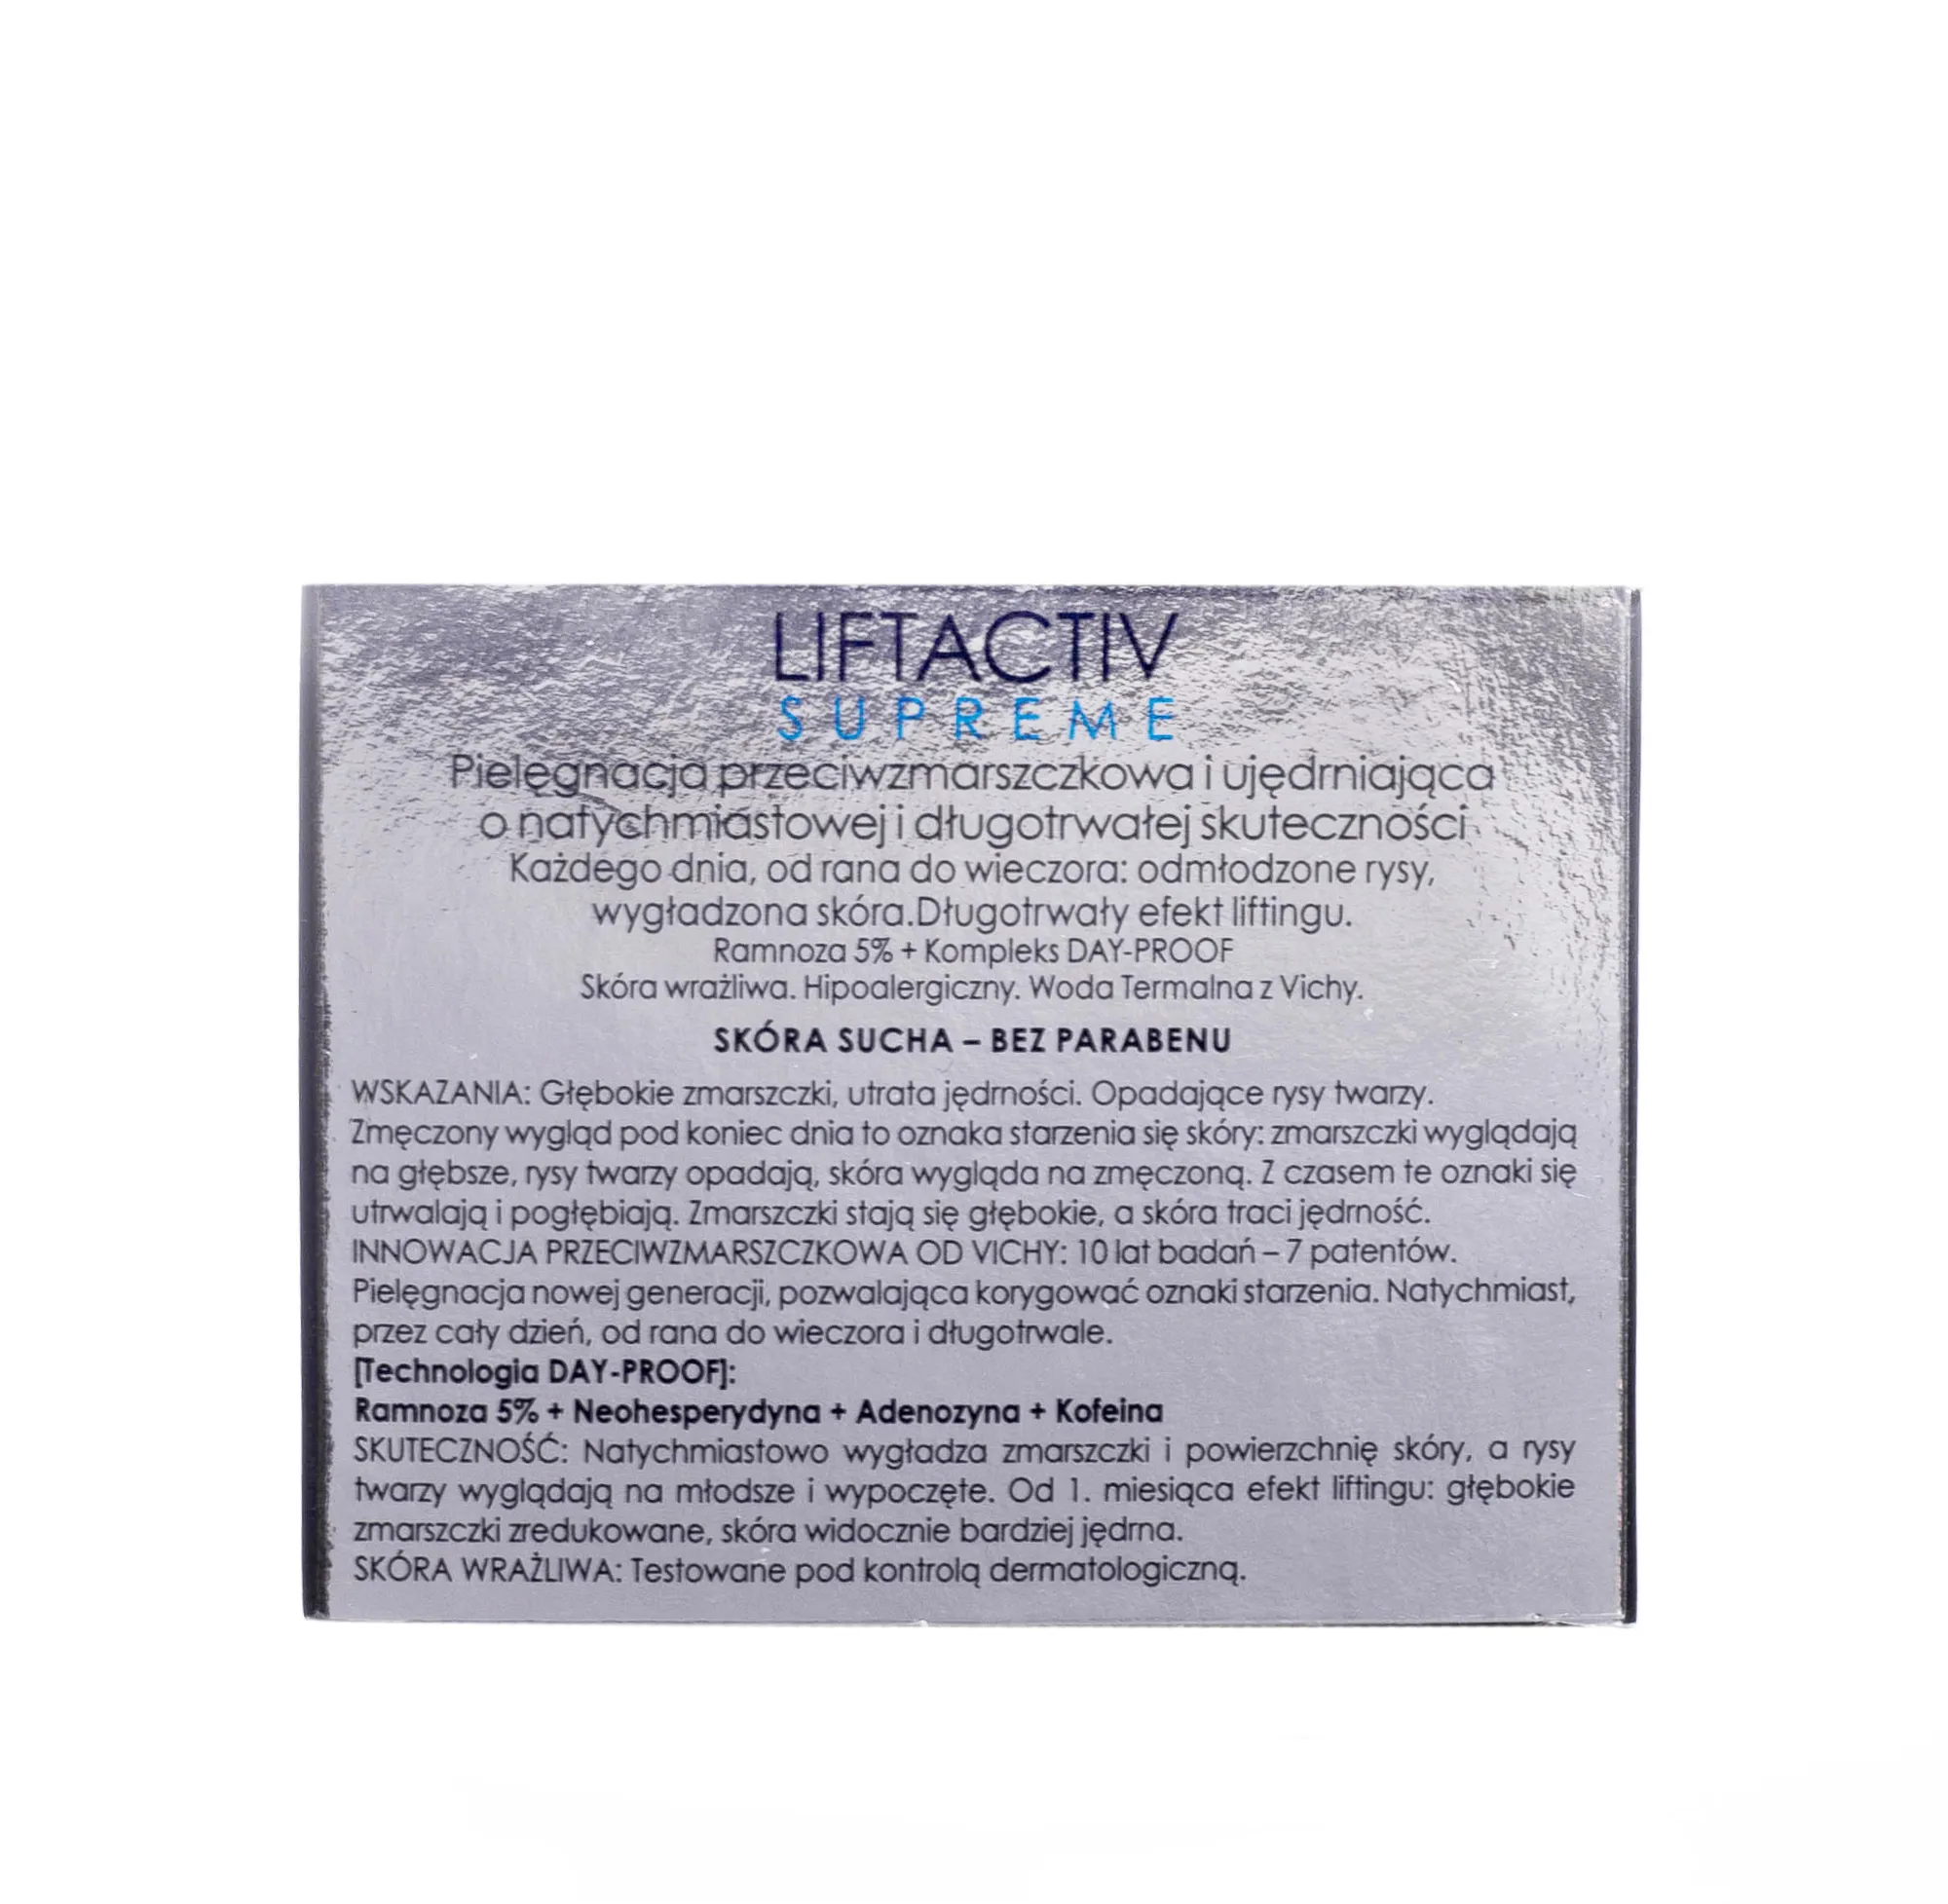 Vichy Liftactiv Supreme krem na dzień sk.sucha, 50 ml 